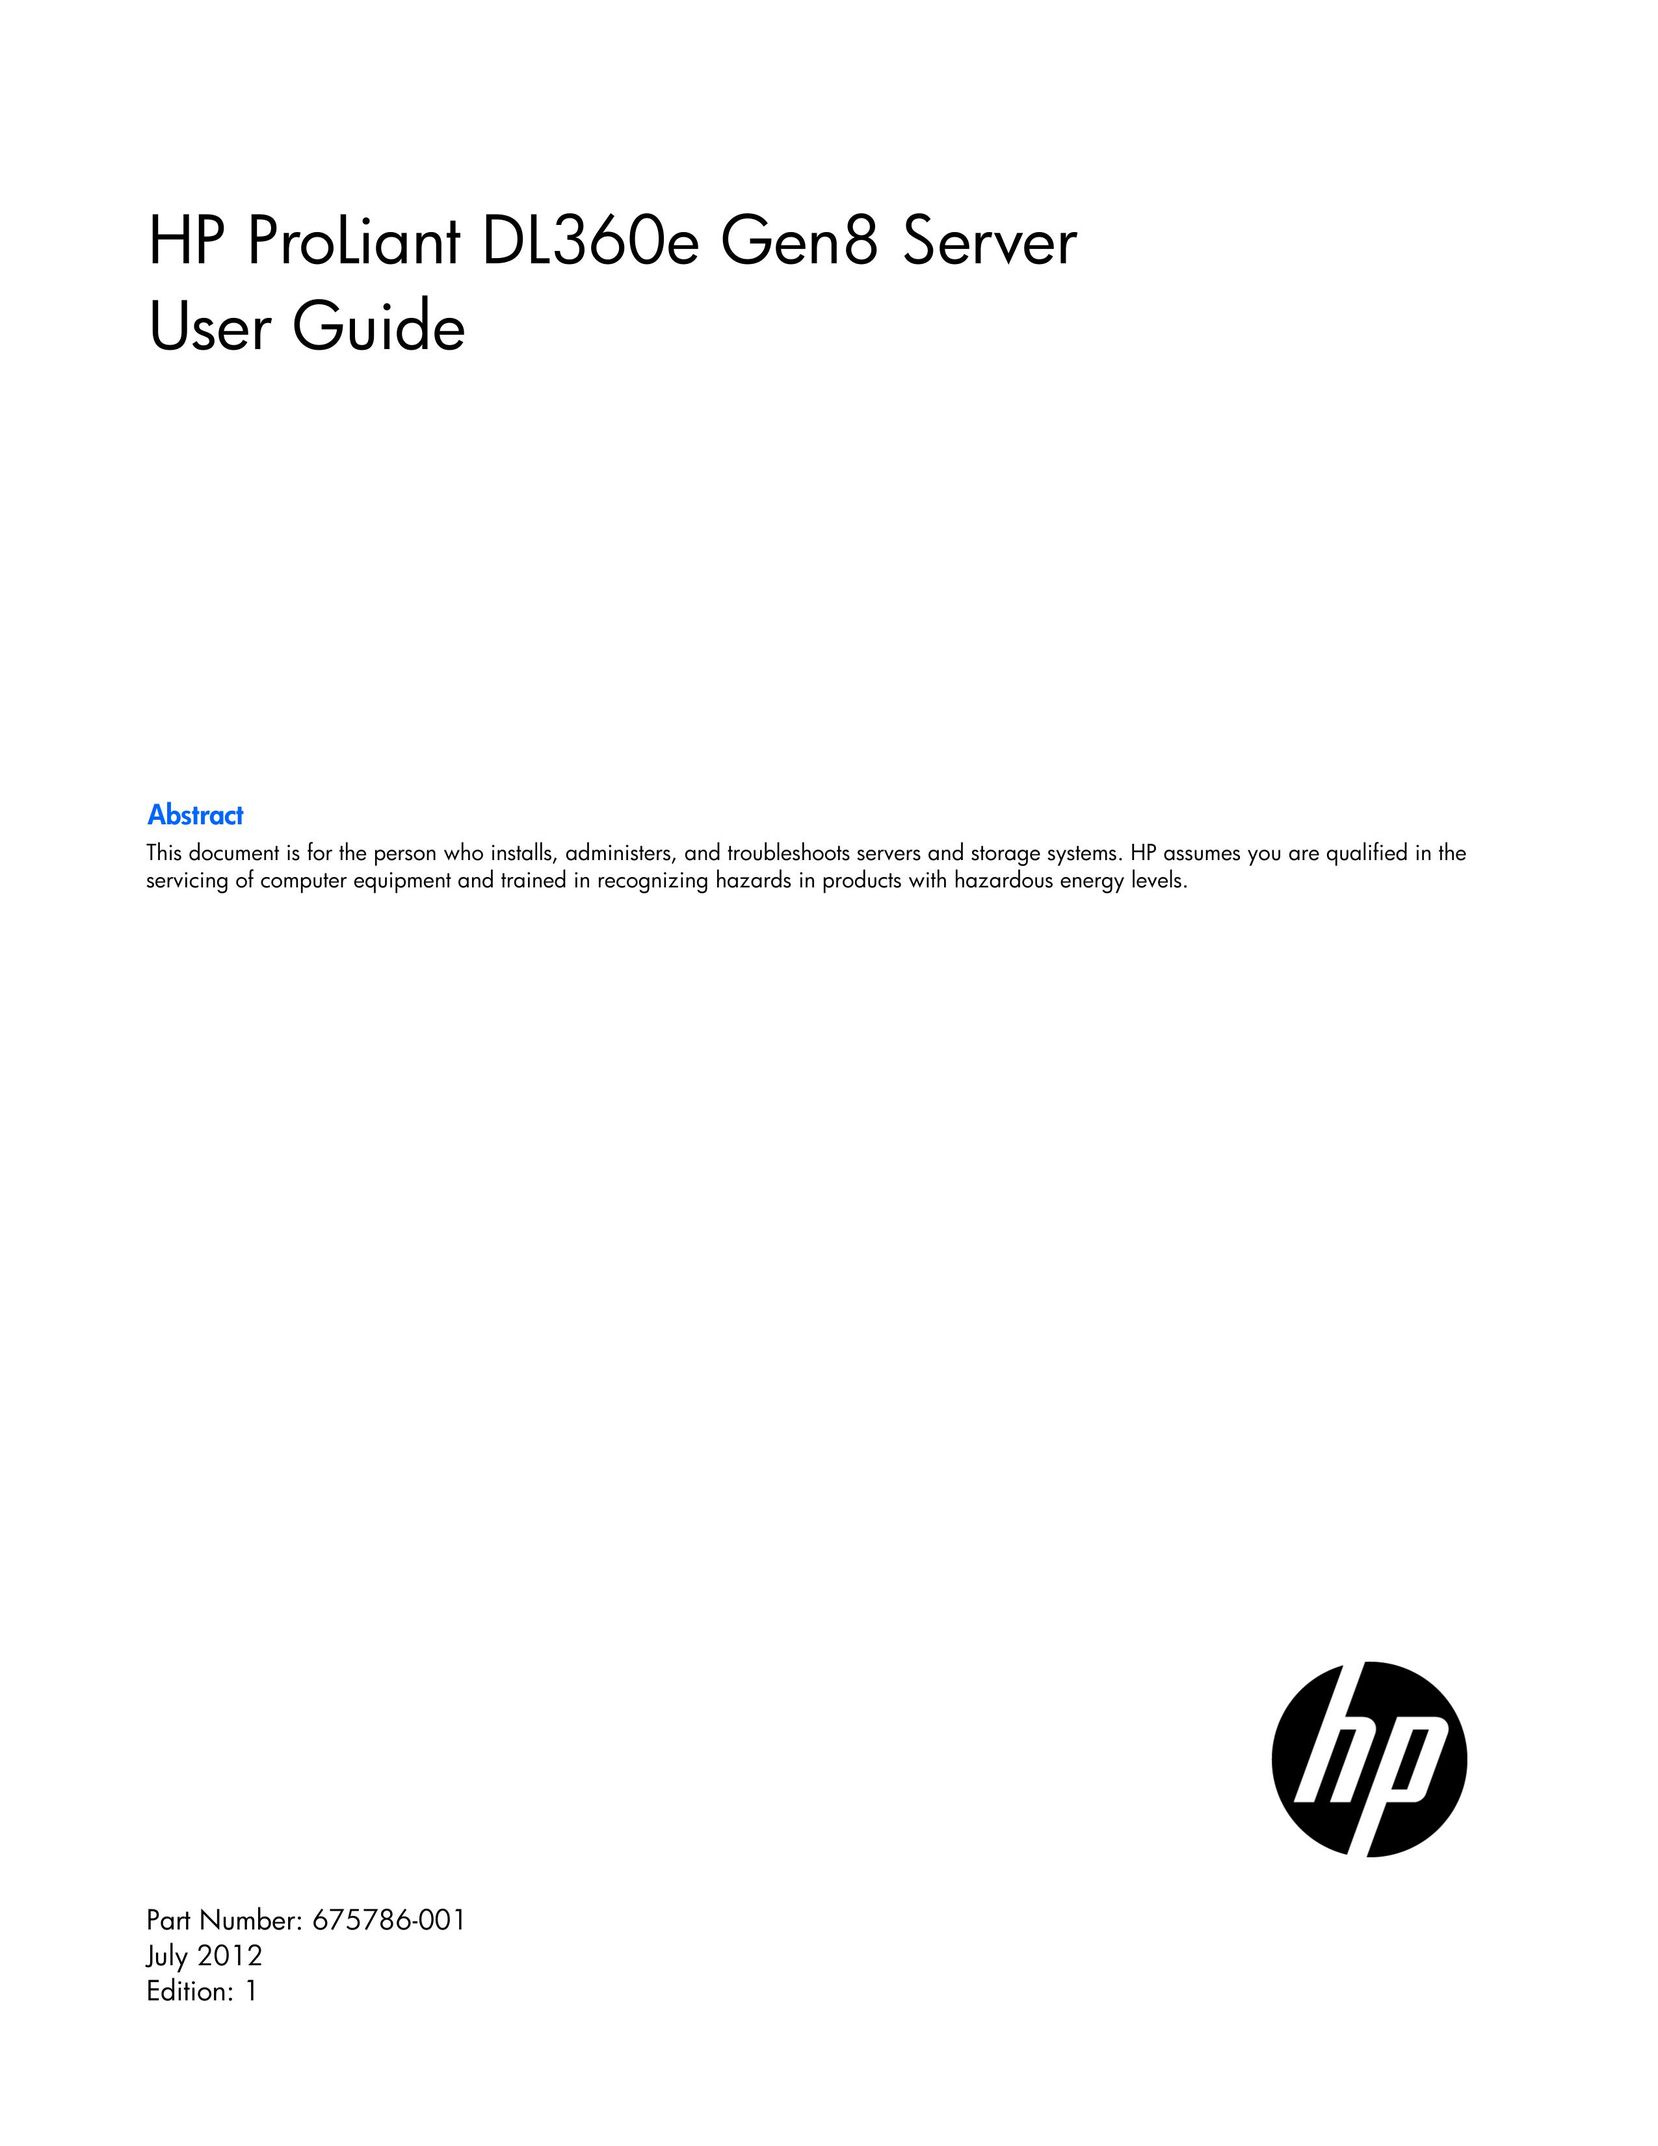 HP (Hewlett-Packard) 686210-S01 Server User Manual